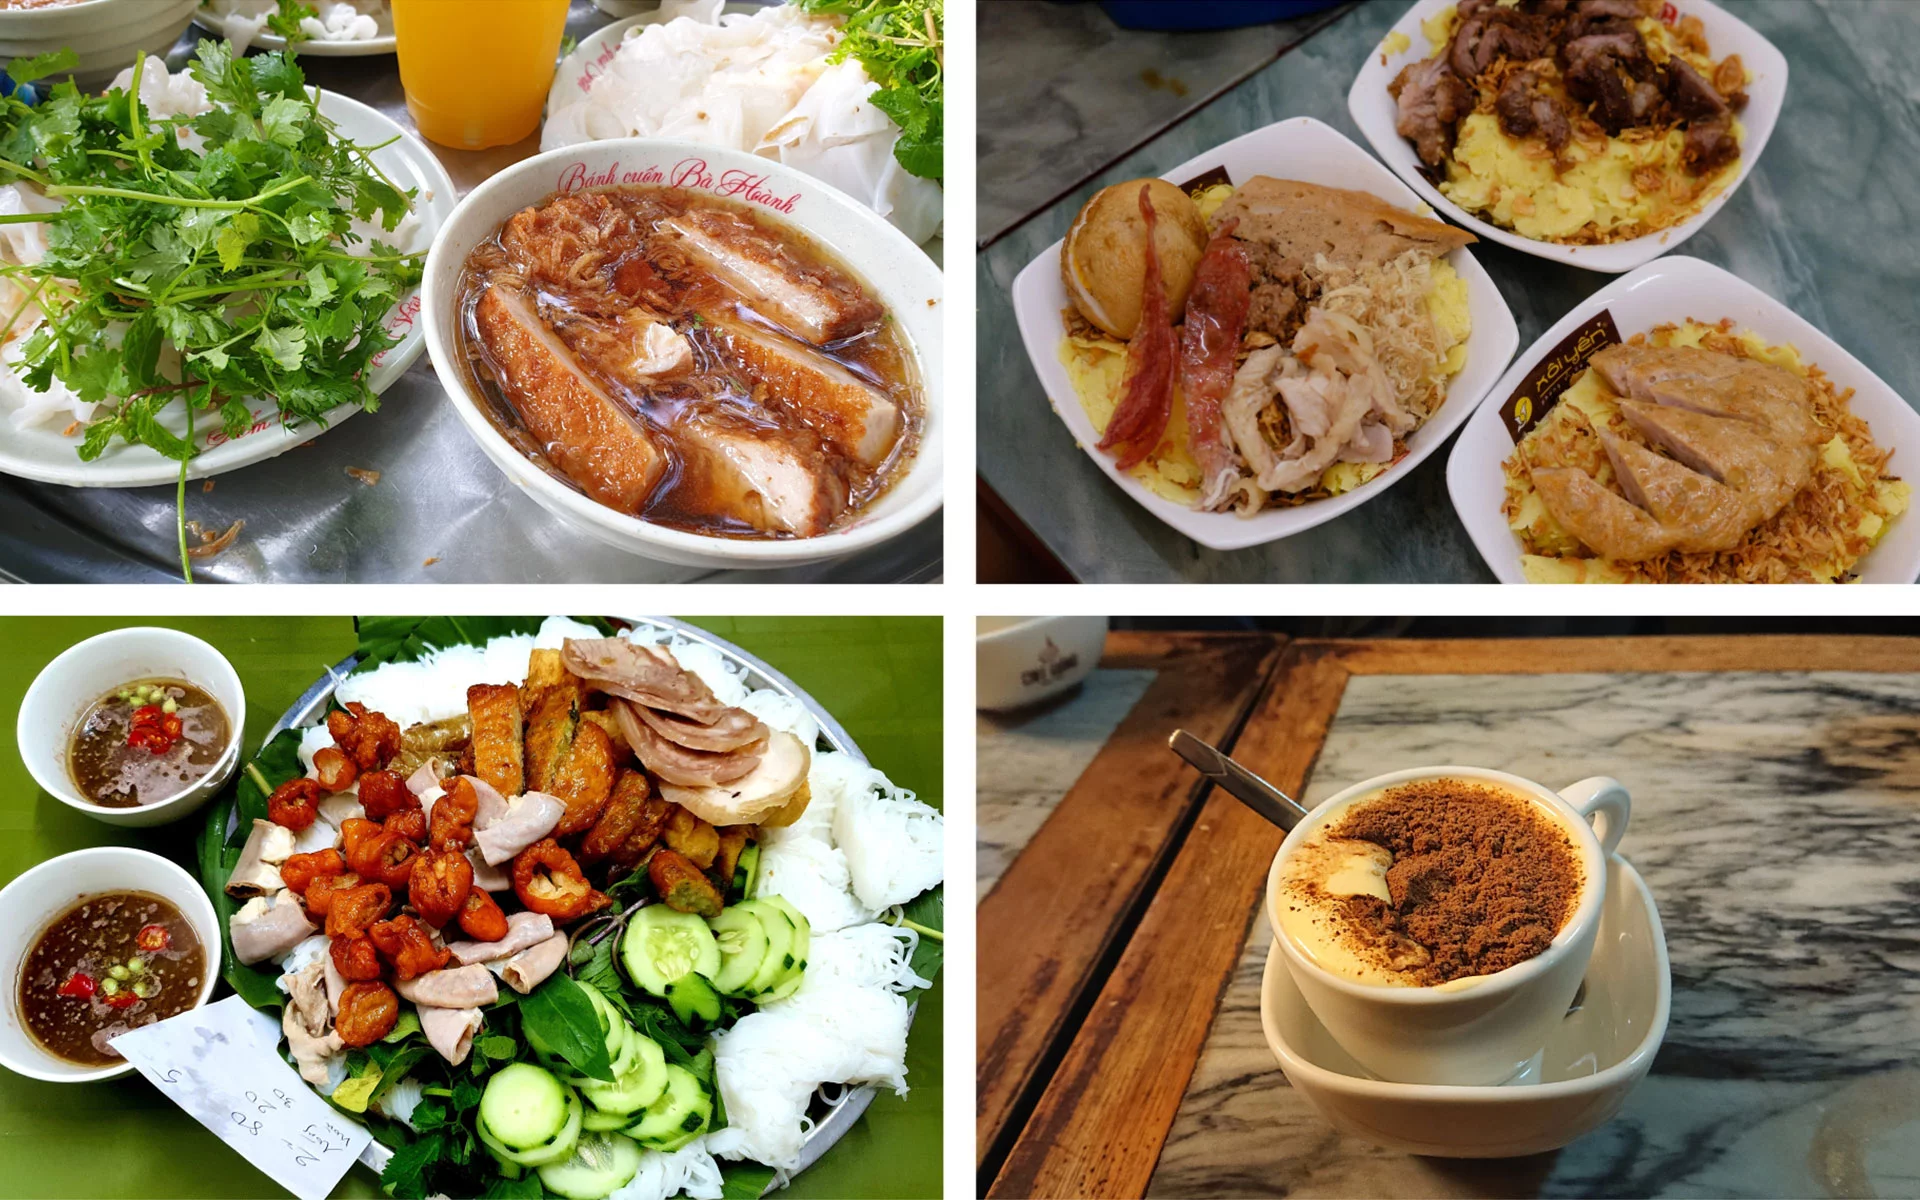 Hanoi Street Food